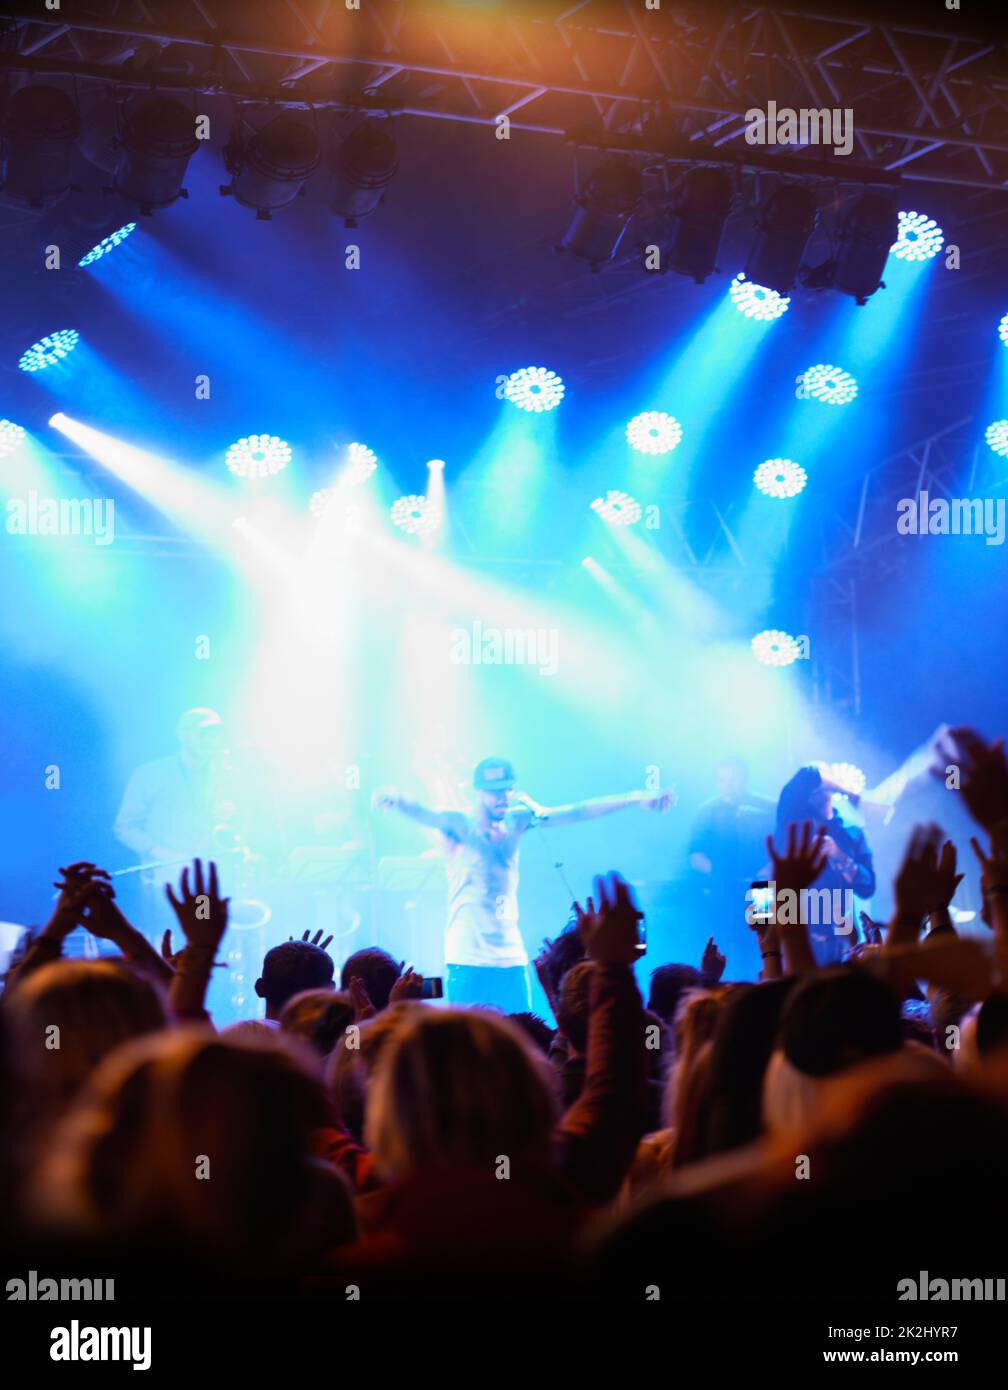 Die Parteileute loben. Rückansicht eines Publikums mit erhobenen Händen bei einem Musikfestival und von der Bühne herab strömenden Lichtern. Stockfoto